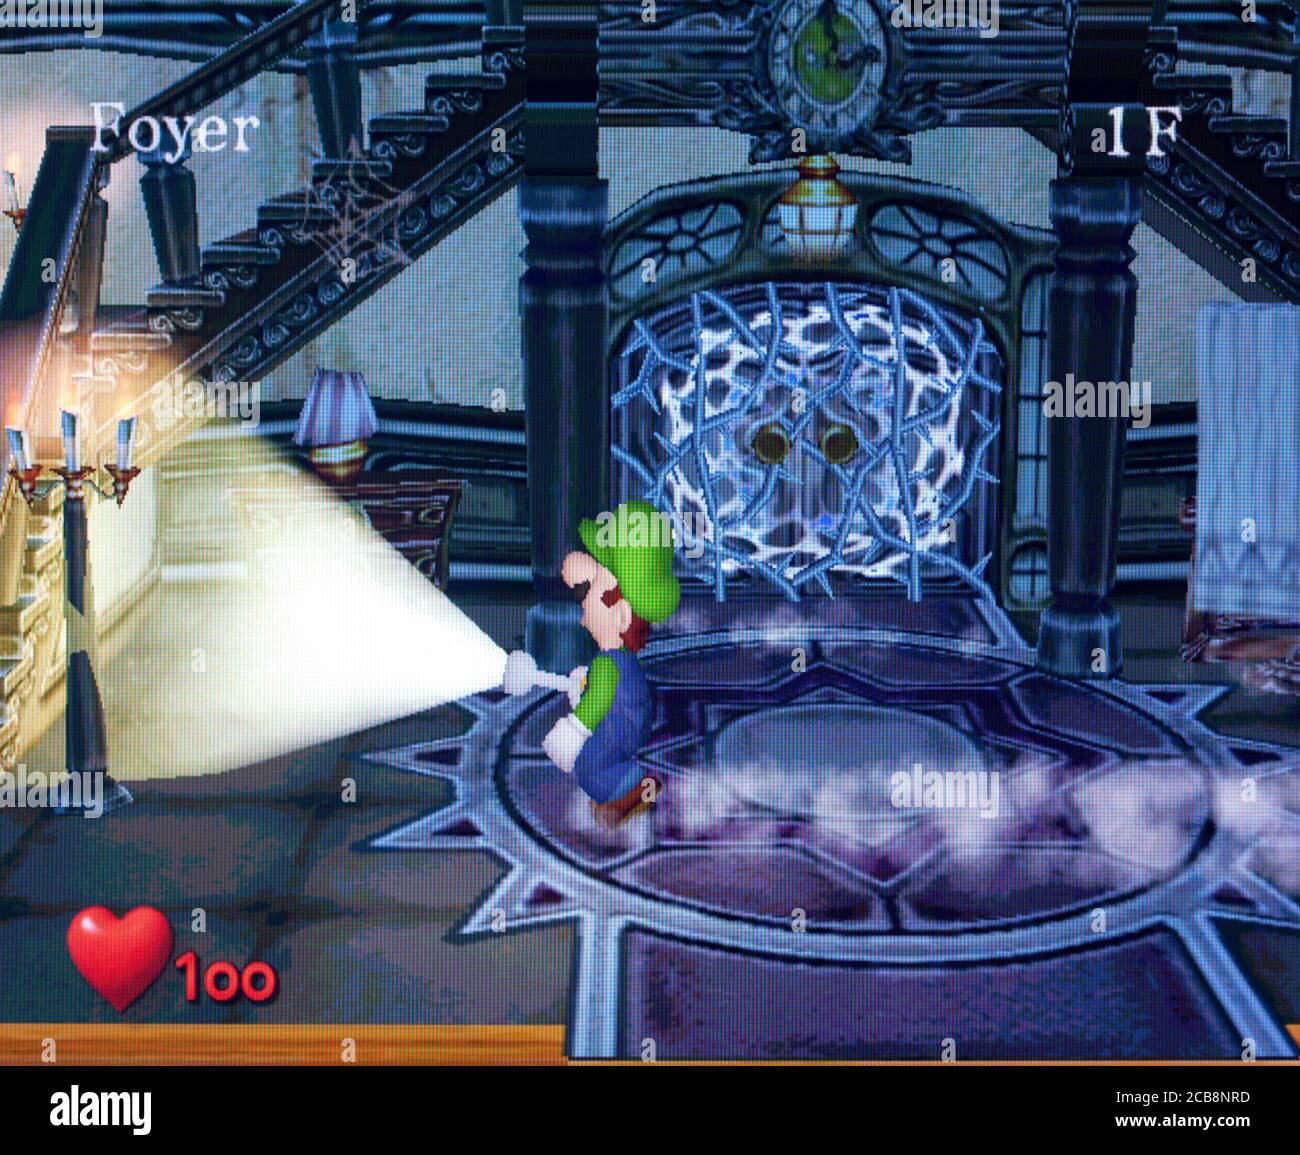 Video Game Luigi's Mansion HD Wallpaper